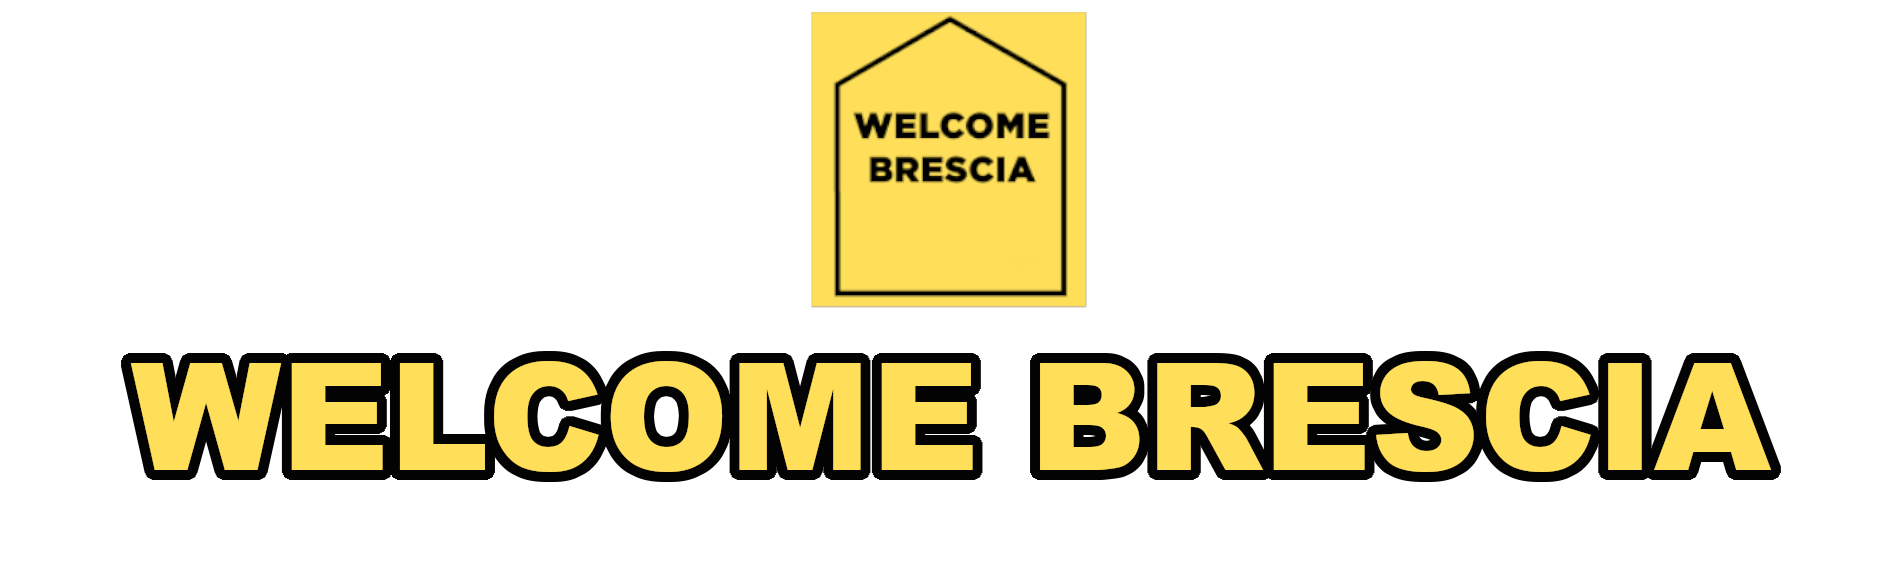 Welcome Brescia